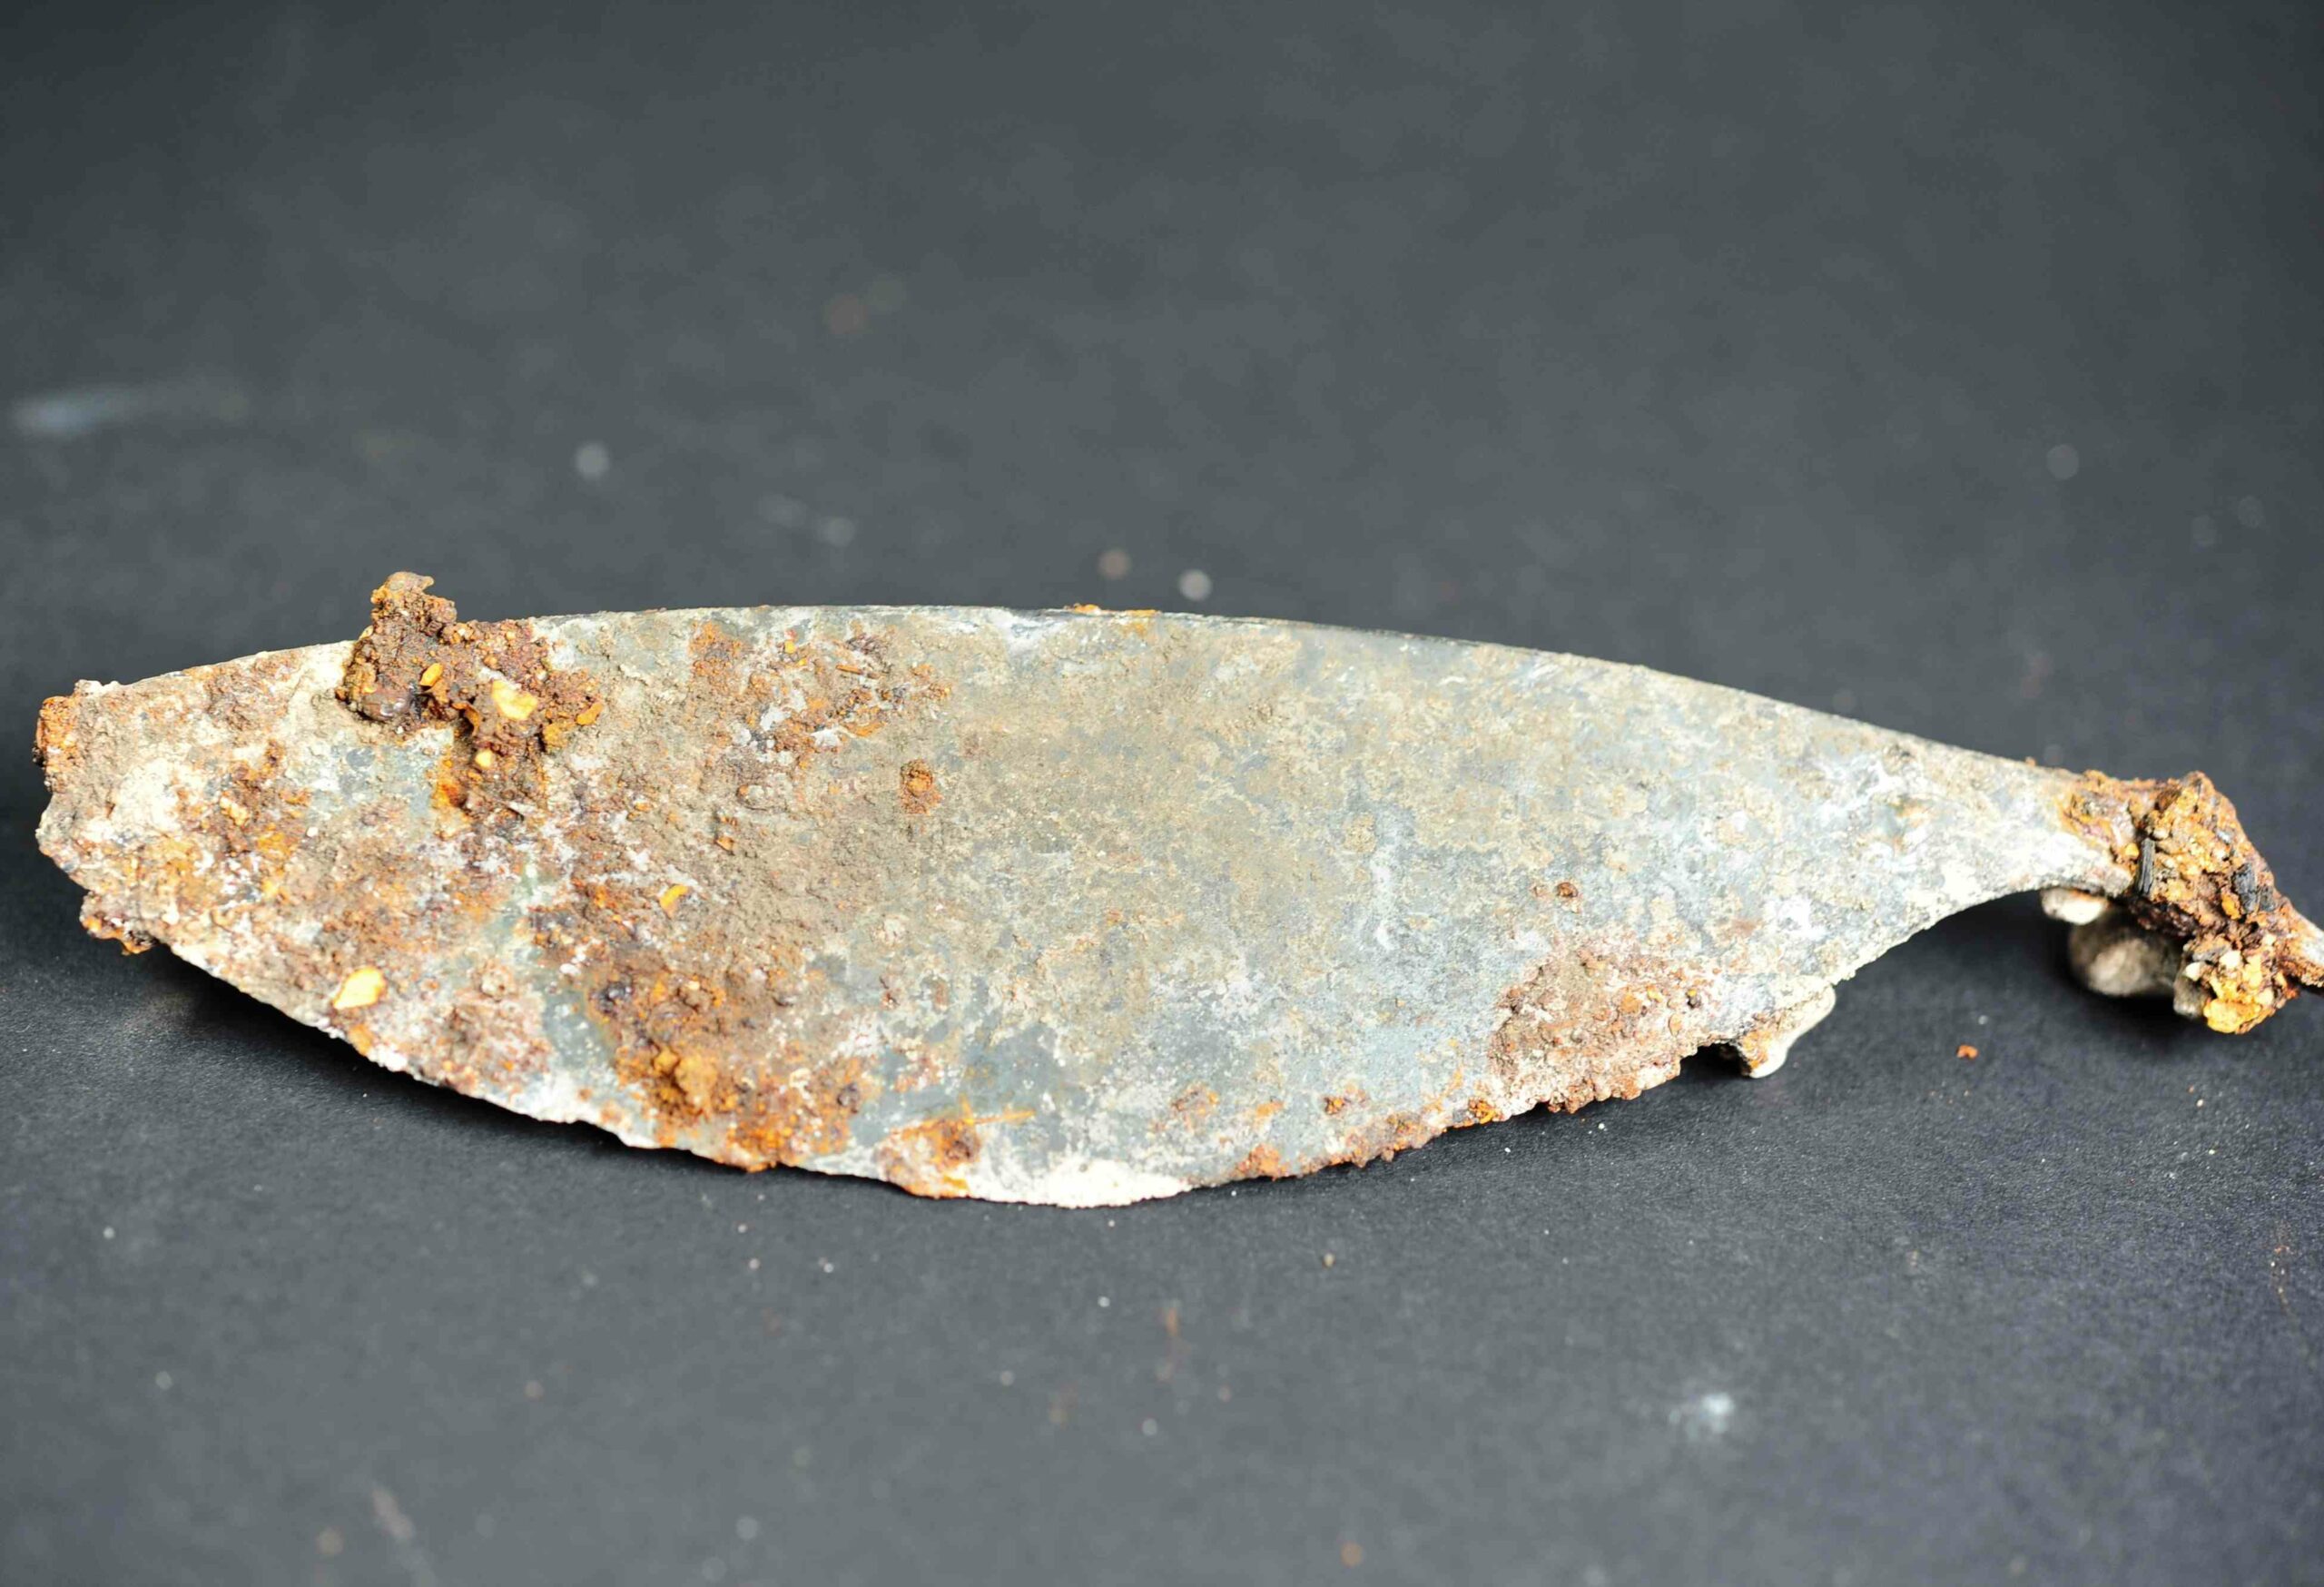 Škare stare 2,300 godina i 'presavijeni' mač otkriveni u keltskoj grobnici za kremiranje u Njemačkoj 4